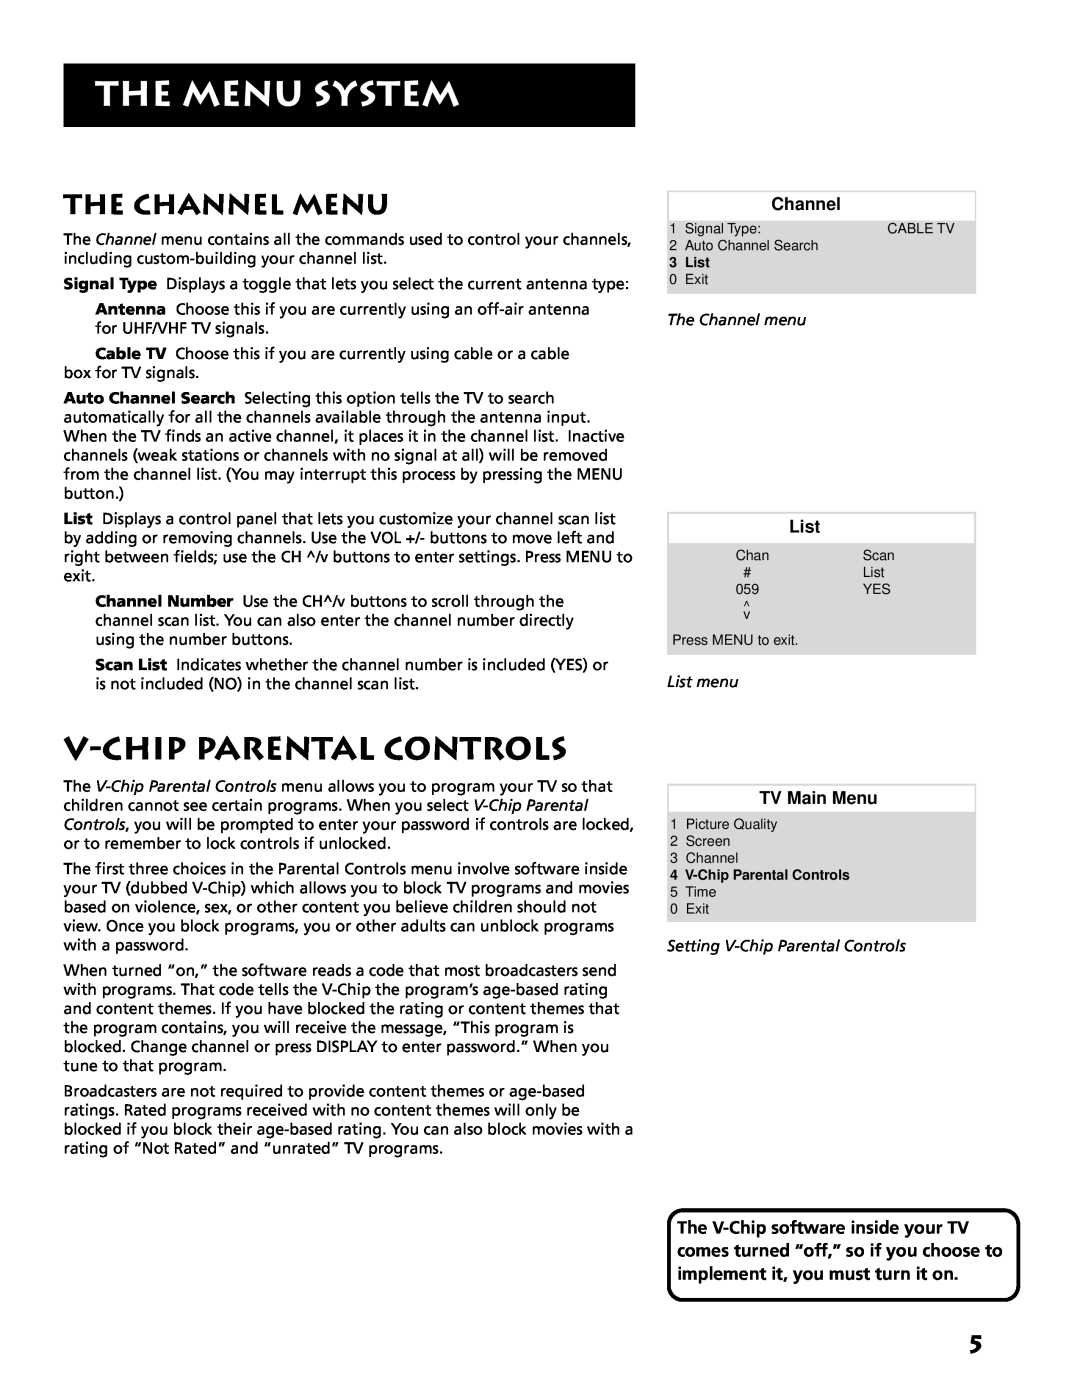 RCA E13318 V-Chip Parental Controls, The Channel Menu, The Menu System, TV Main Menu, The Channel menu, List menu 